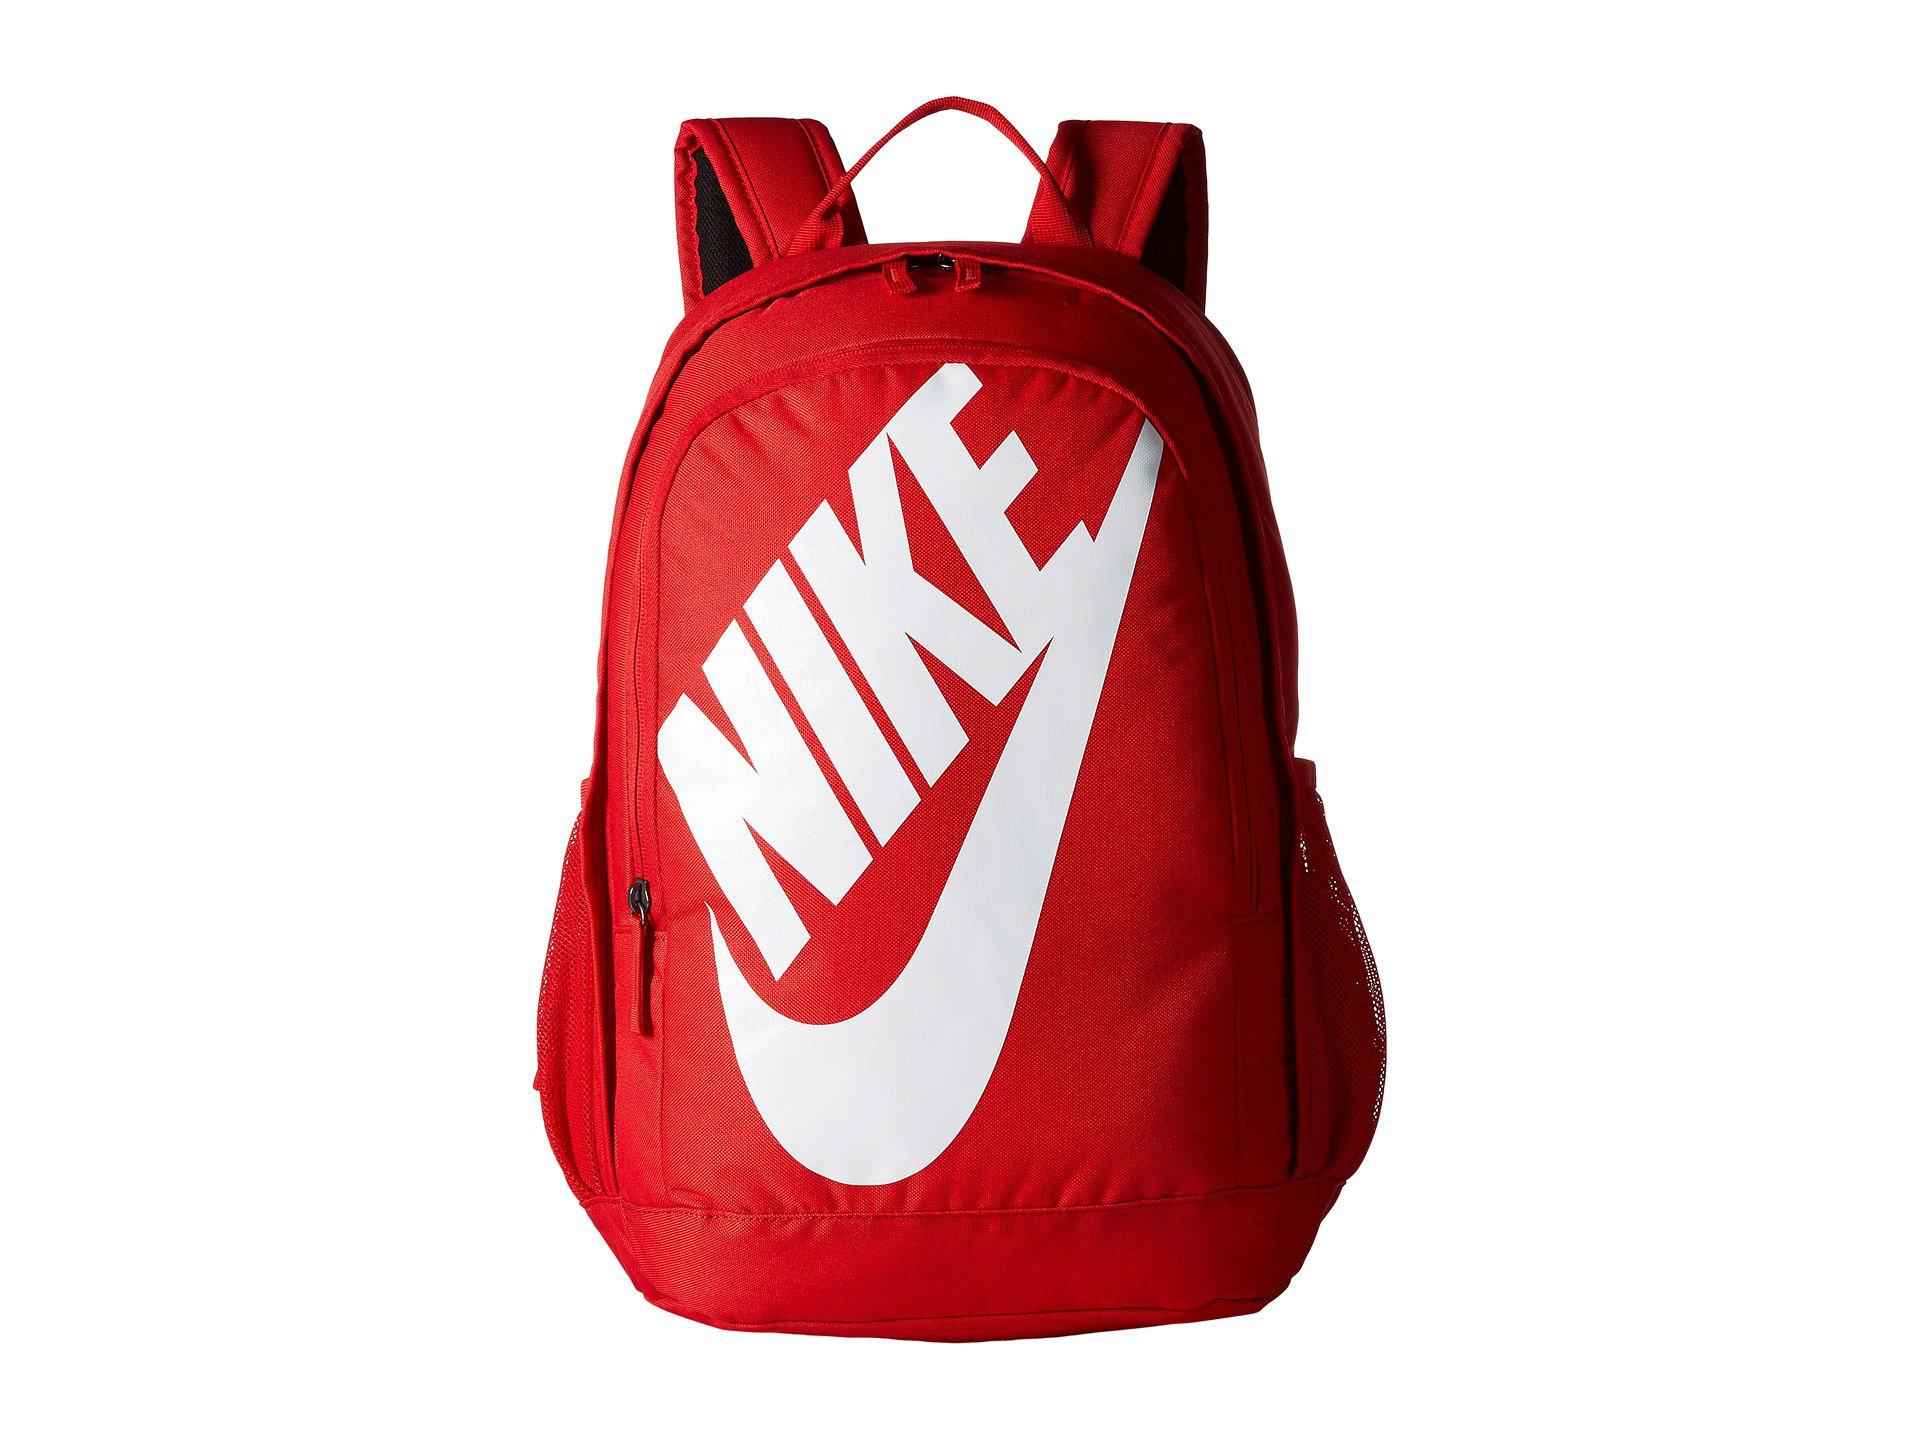 Nike Hayward Futura Solid Backpack Black